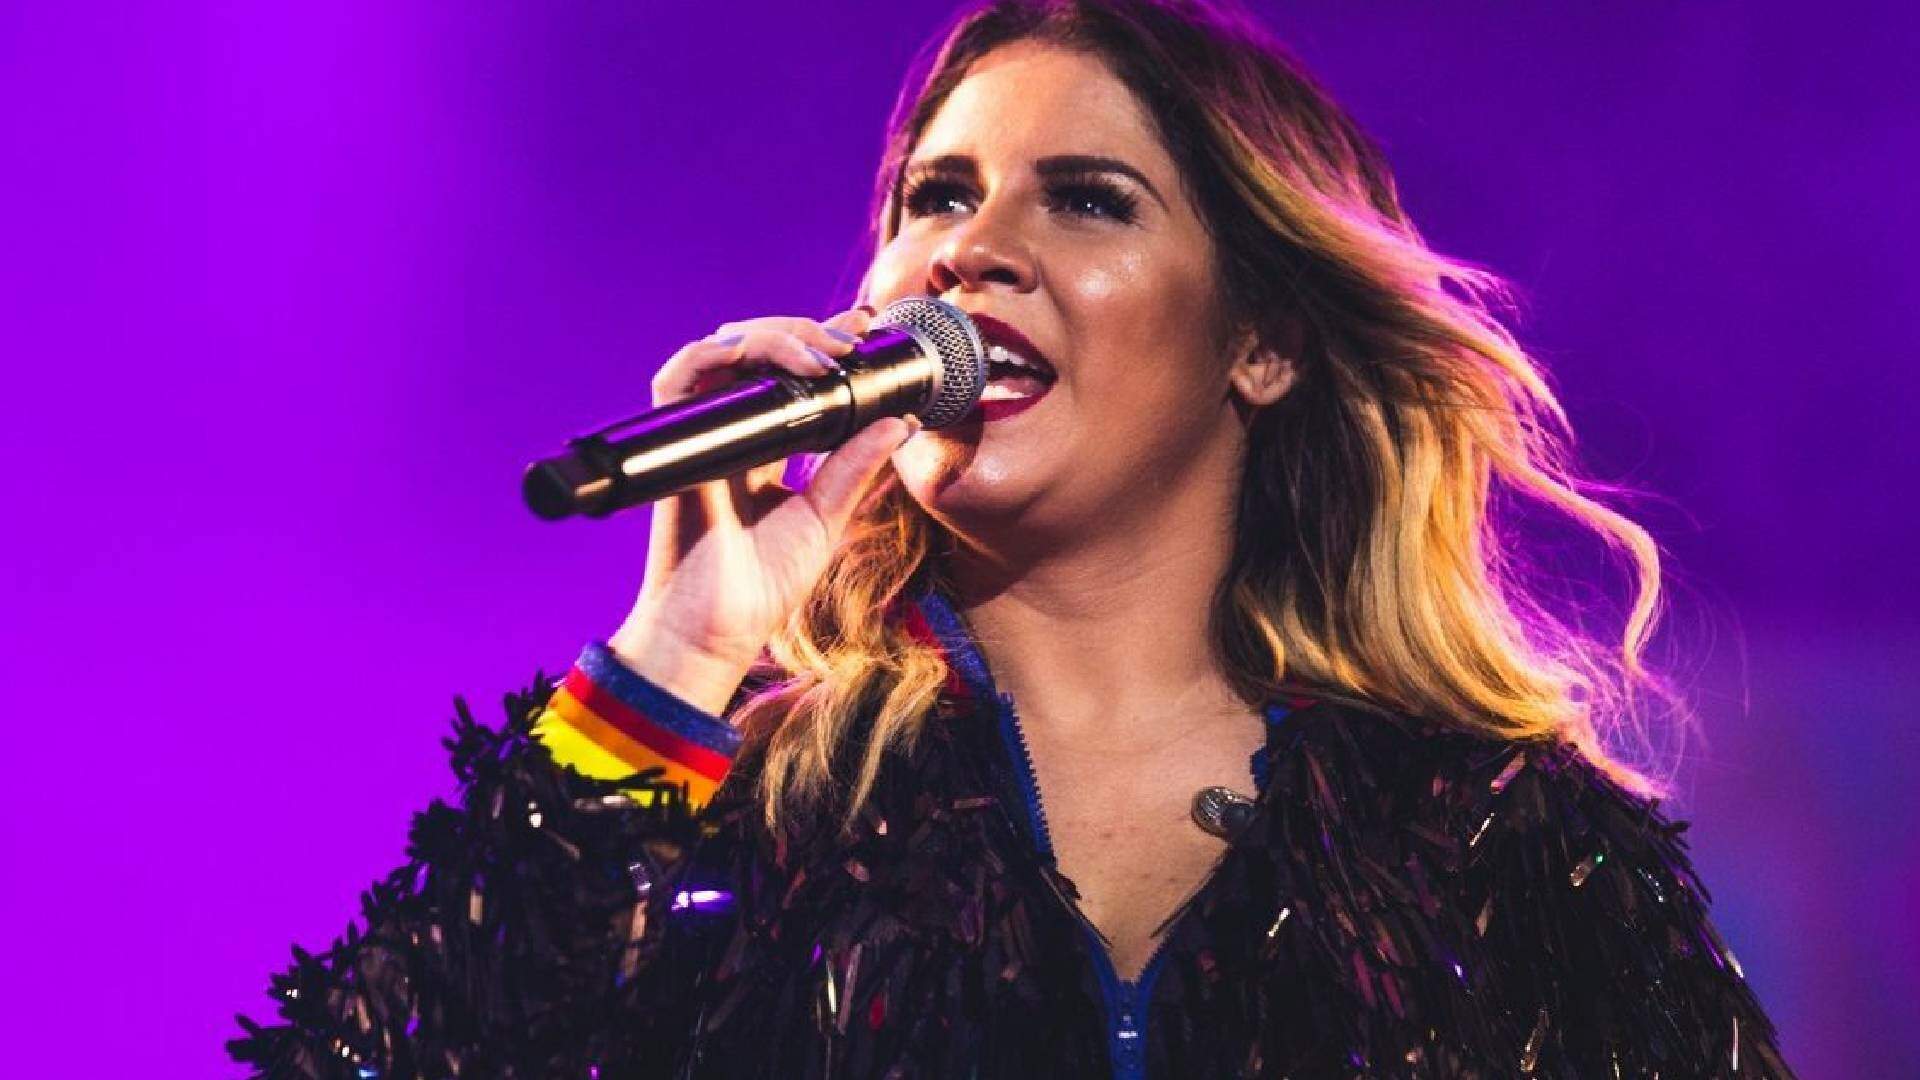 Marília Mendonça iria gravar música em parceria com famoso nome do sertanejo, revela compositores - Metropolitana FM